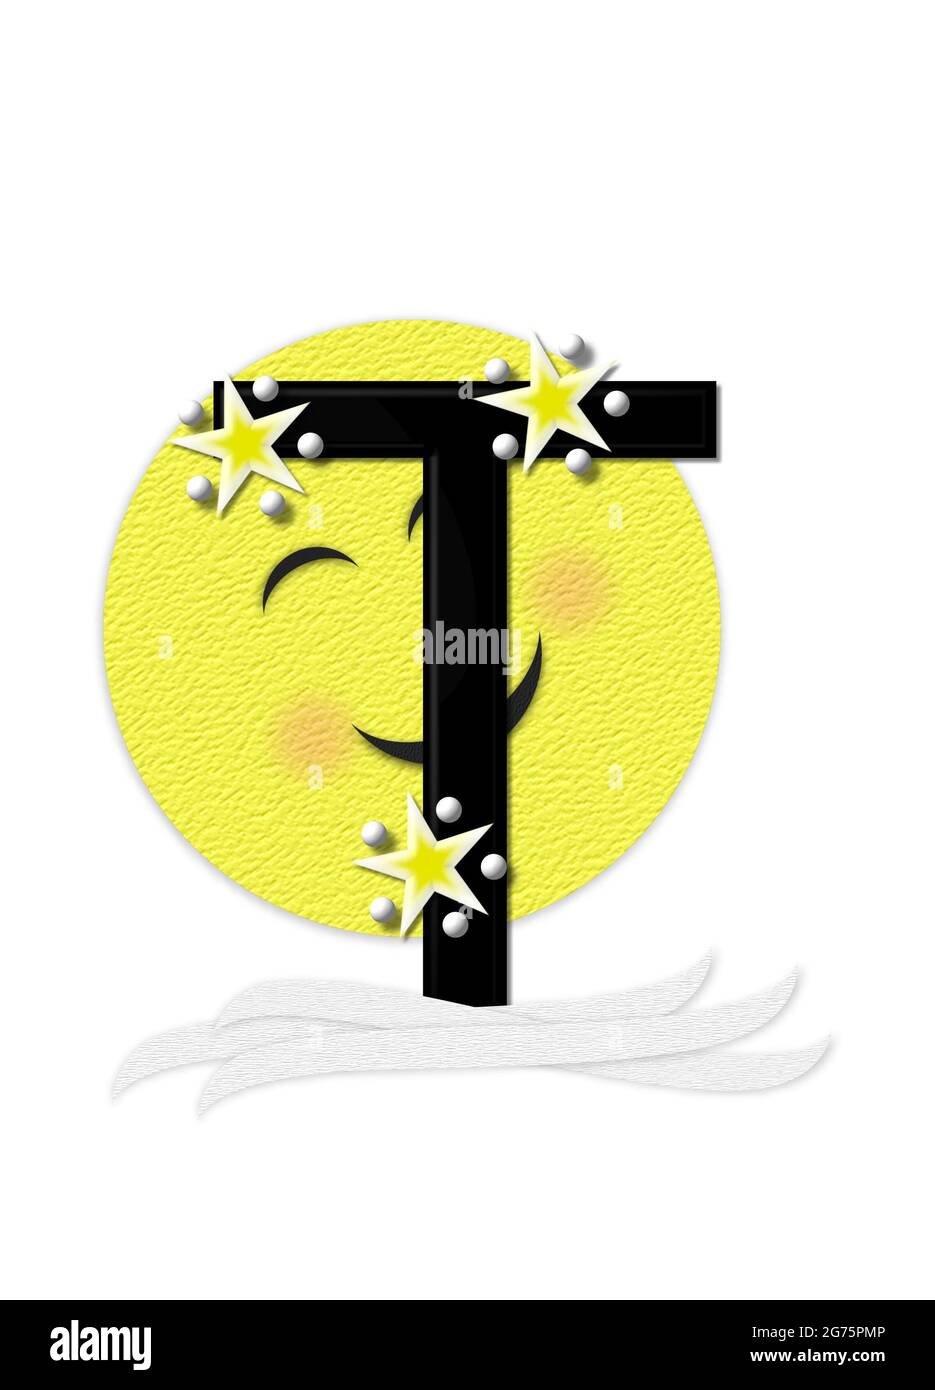 La lettera T, nell'insieme alfabetico 'Moon Beam' è in 3D e nera. Stelle e pois di polka decorano la lettera. Un fascio di luna sorridente sbirra intorno alla lettera. Foto Stock